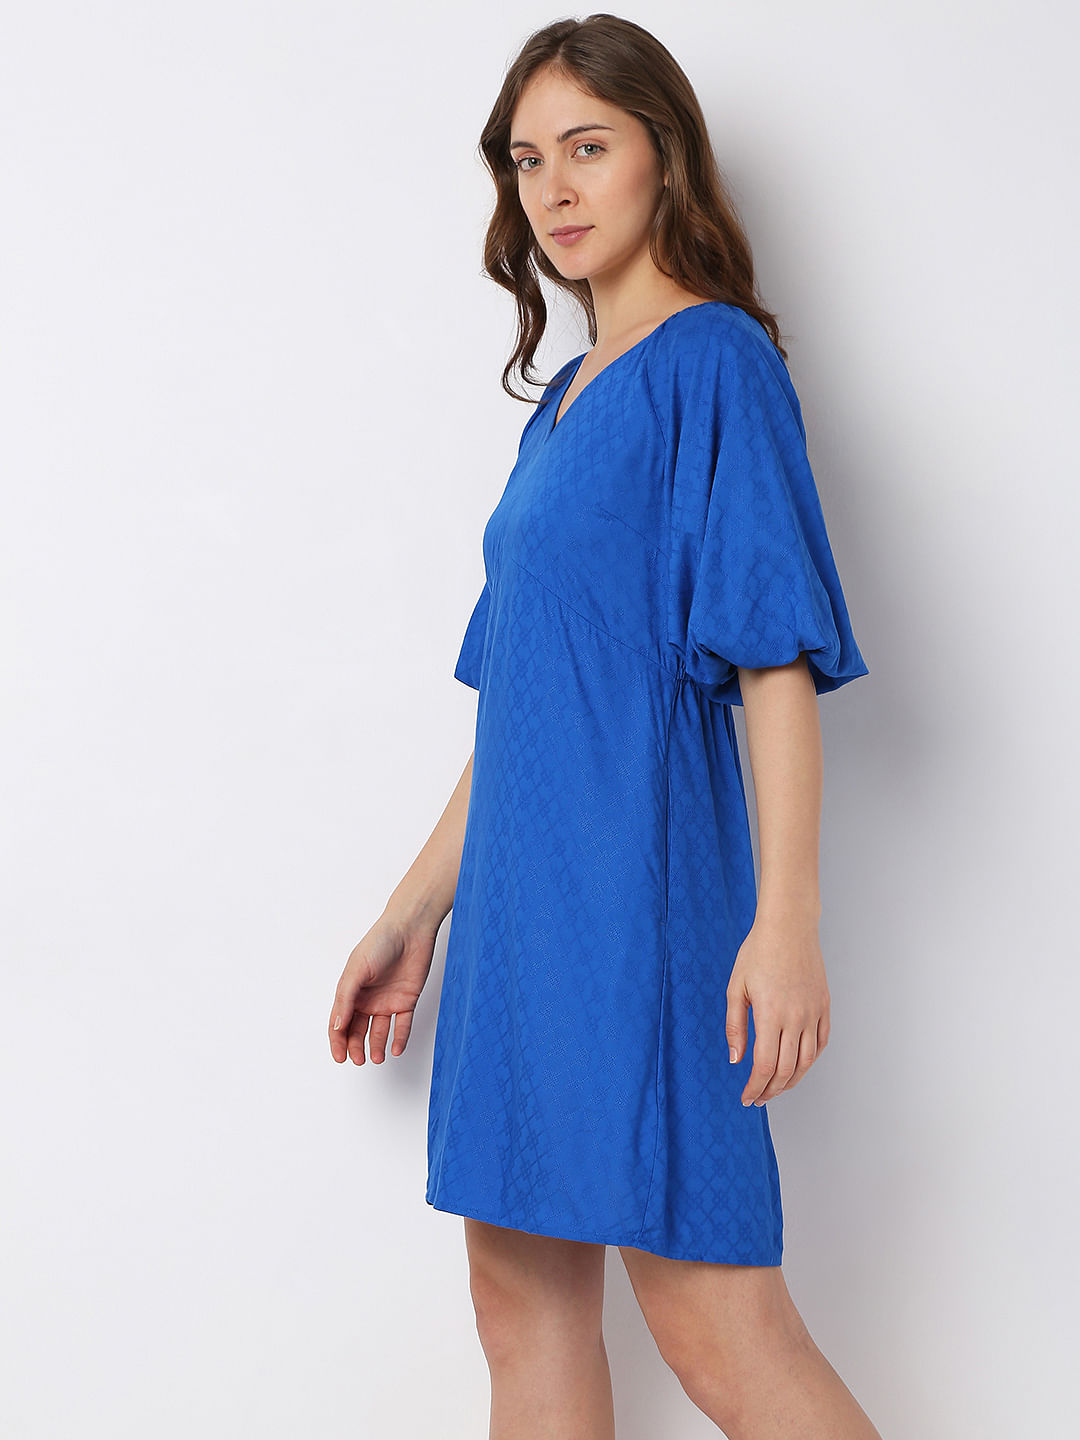 Buy BABYGIRL BLUE MINI DRESS for Women Online in India